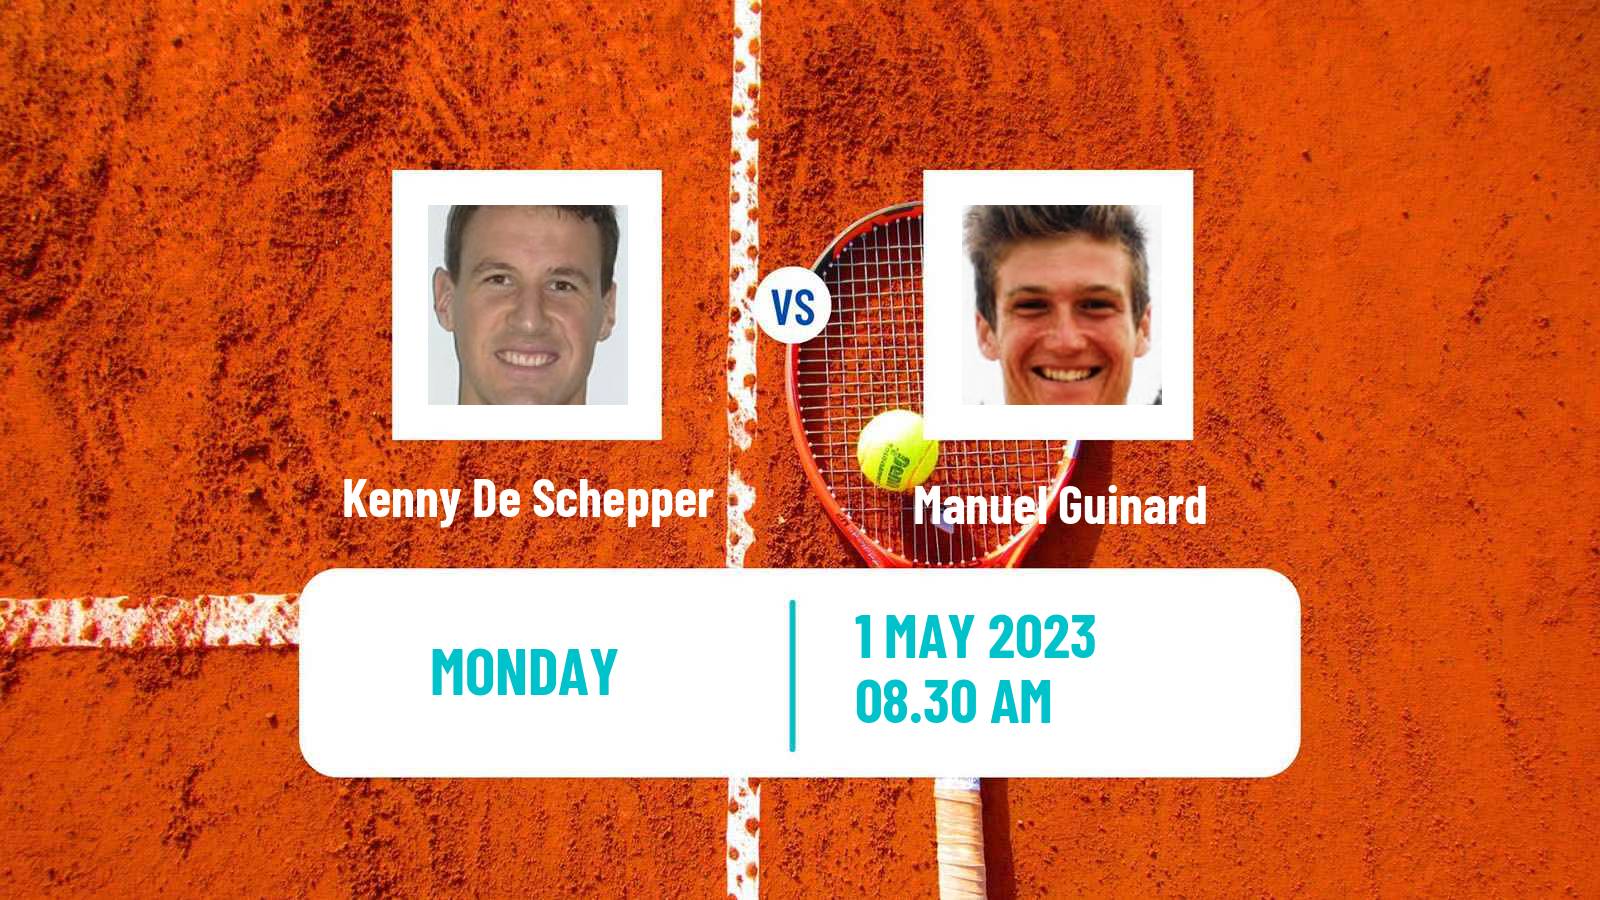 Tennis ATP Challenger Kenny De Schepper - Manuel Guinard